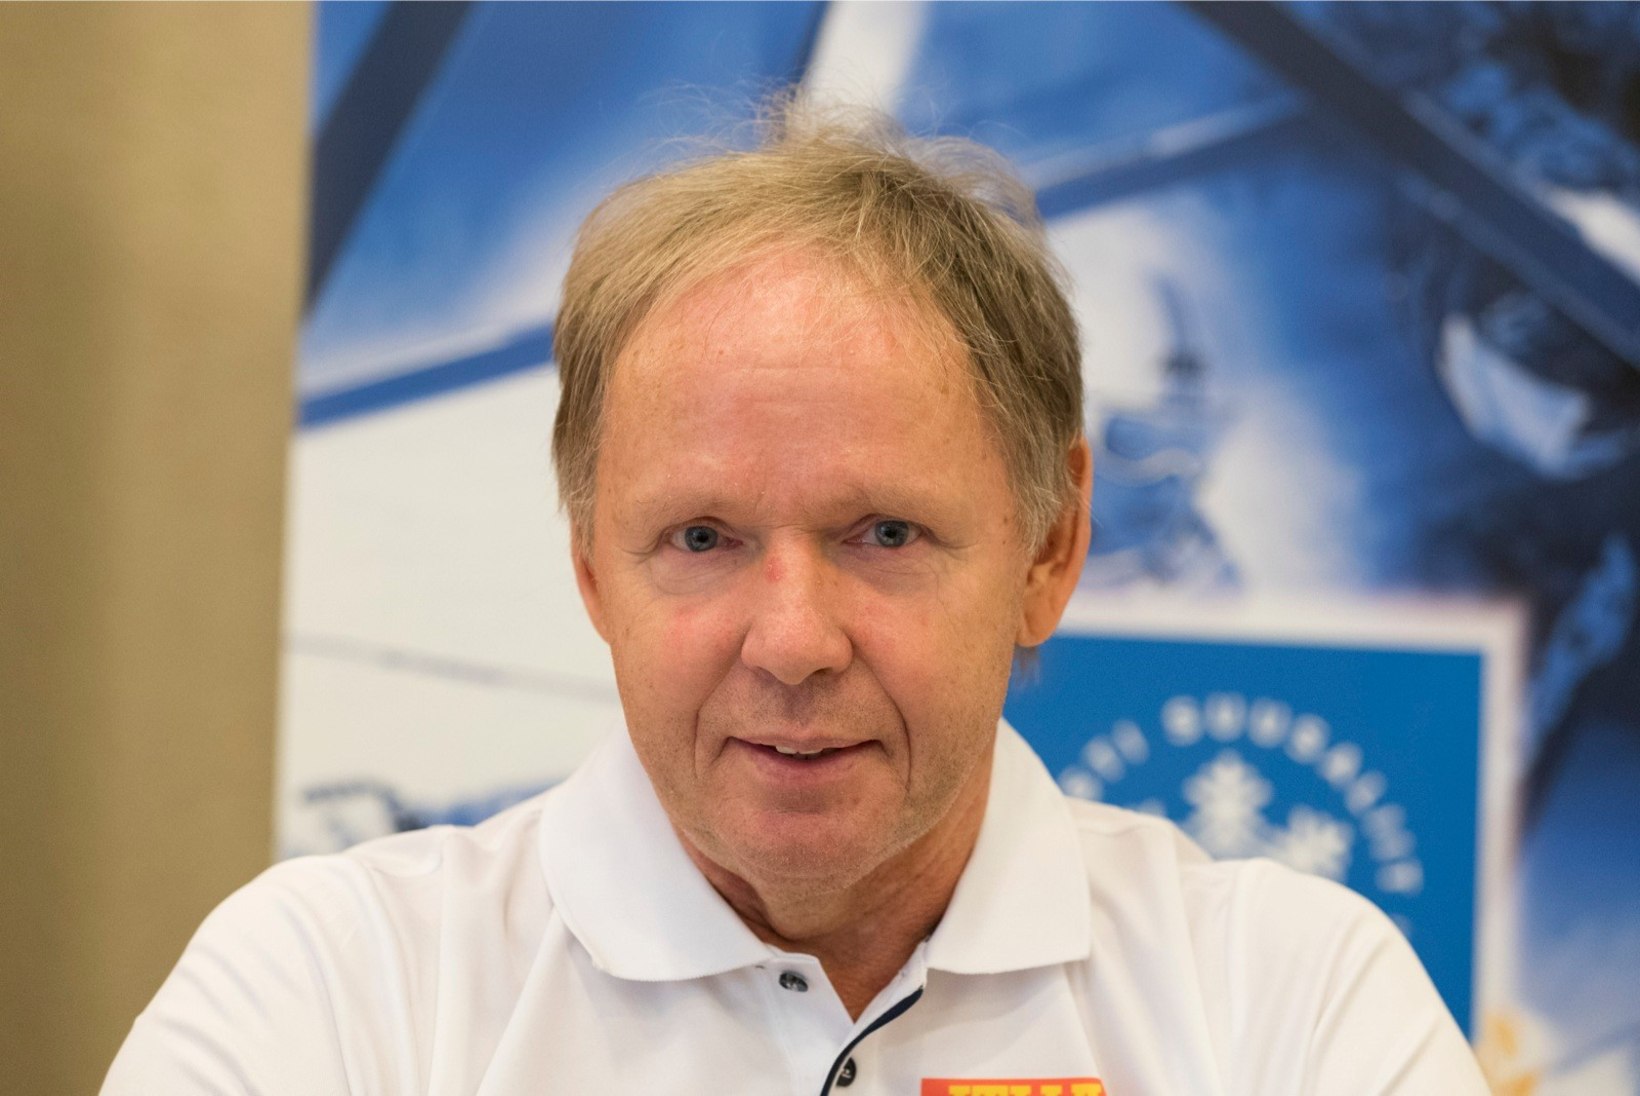 ÕL OLÜMPIAL | Treener Hillar Hein selgitas tuulefaktorit ja möönas, et lõi kvalifikatsiooni järel rusikaga kõvasti vastu seina